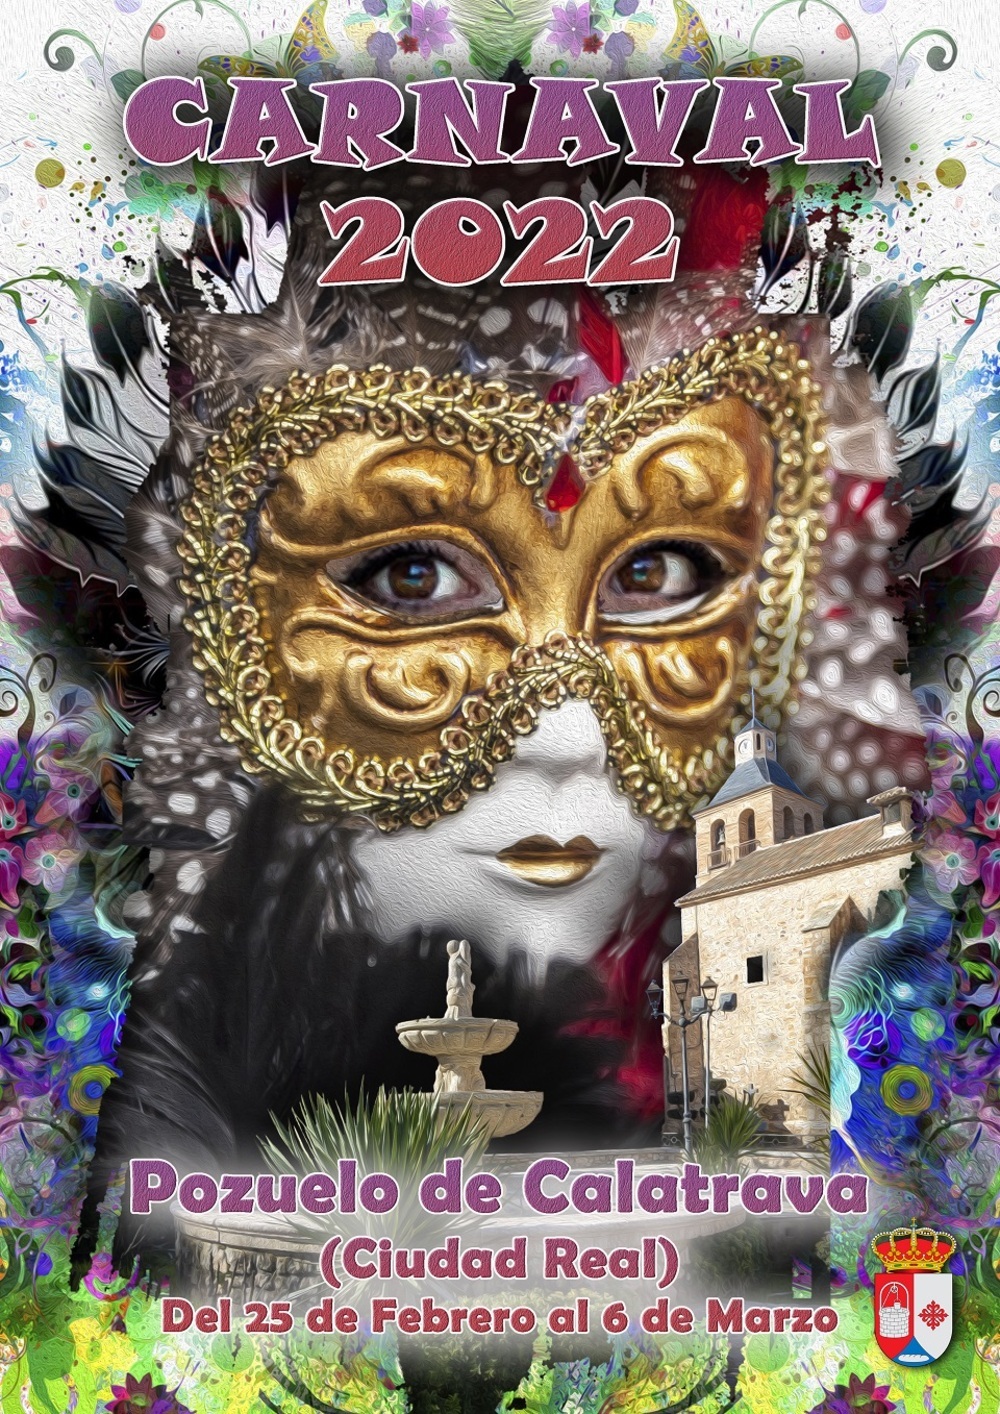 El Carnaval regresará a las calles de Pozuelo